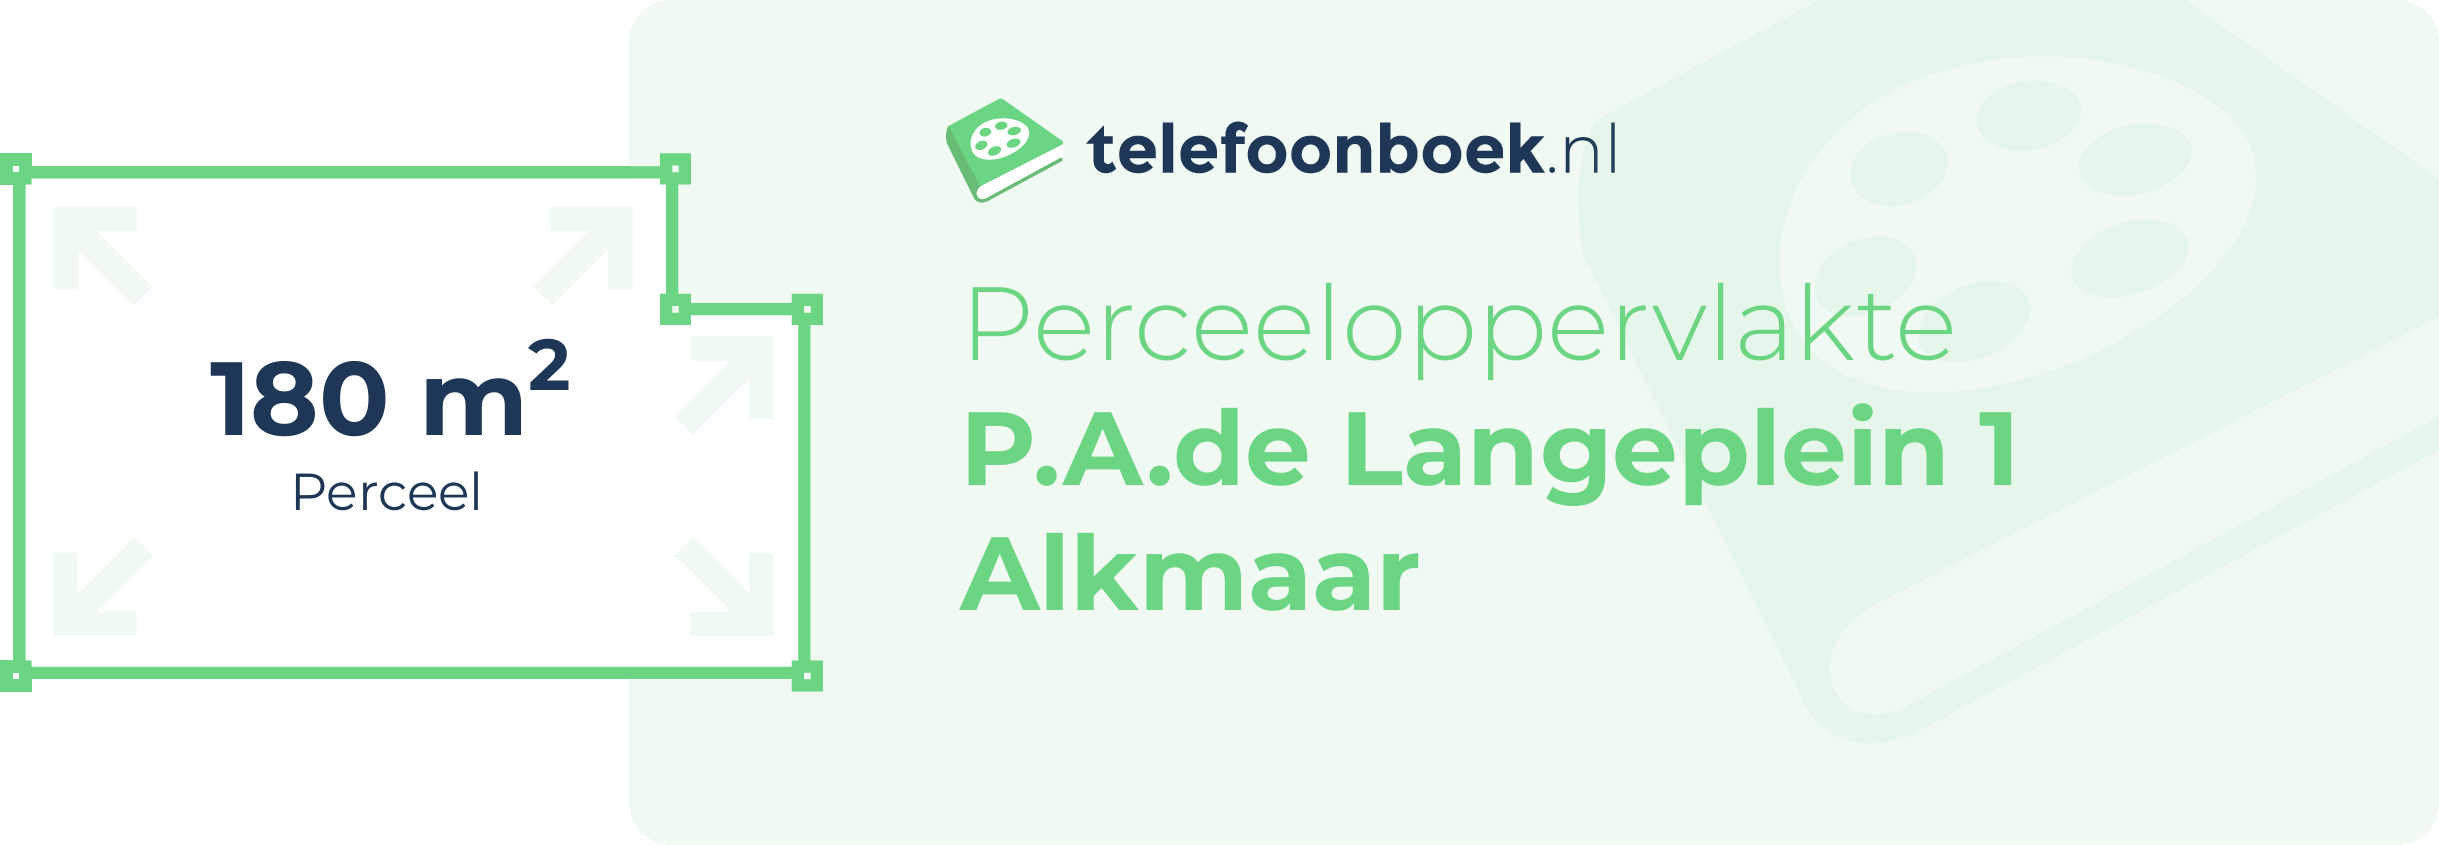 Perceeloppervlakte P.A.de Langeplein 1 Alkmaar